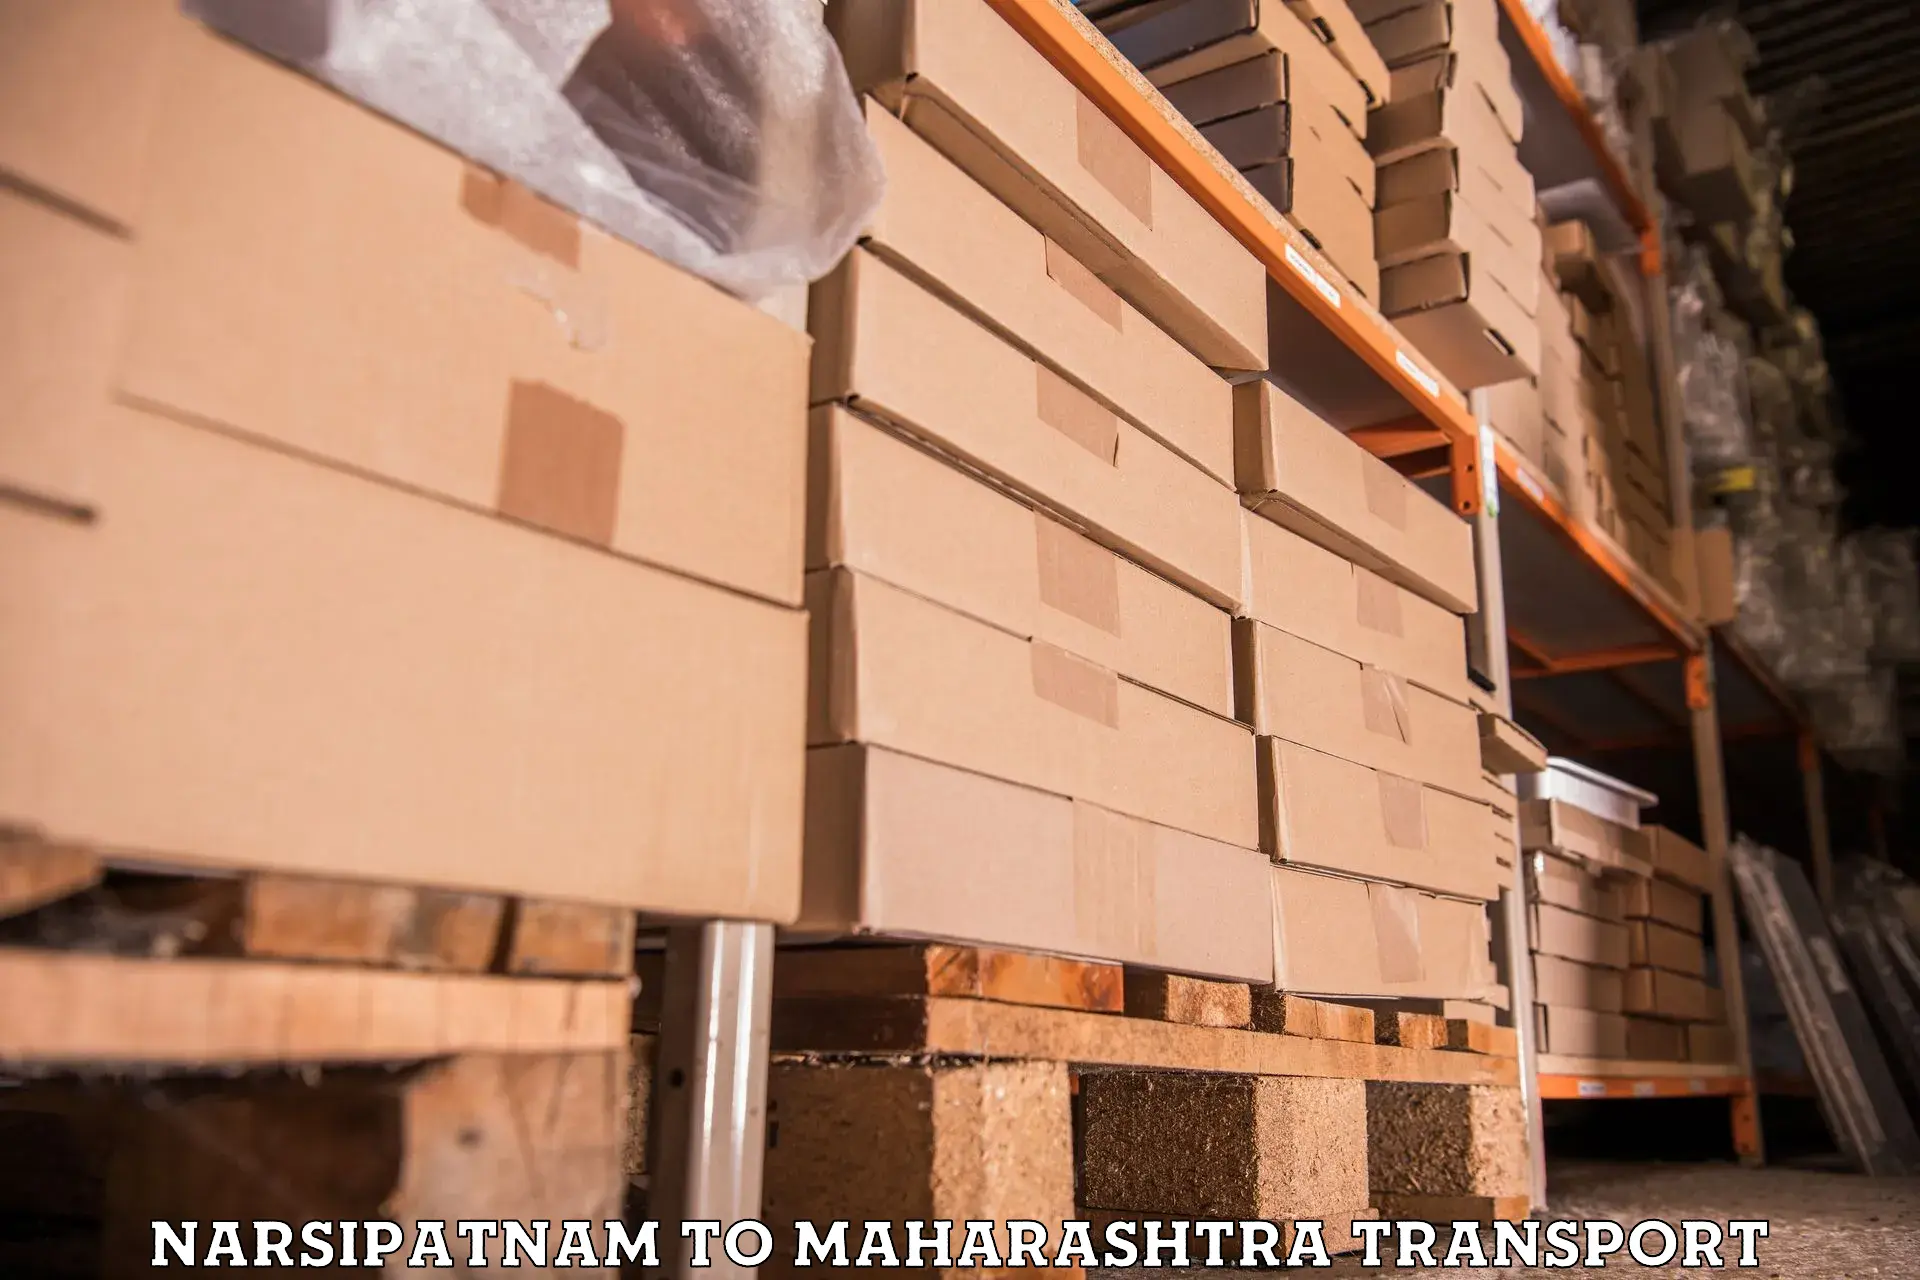 Nearby transport service Narsipatnam to Maharashtra